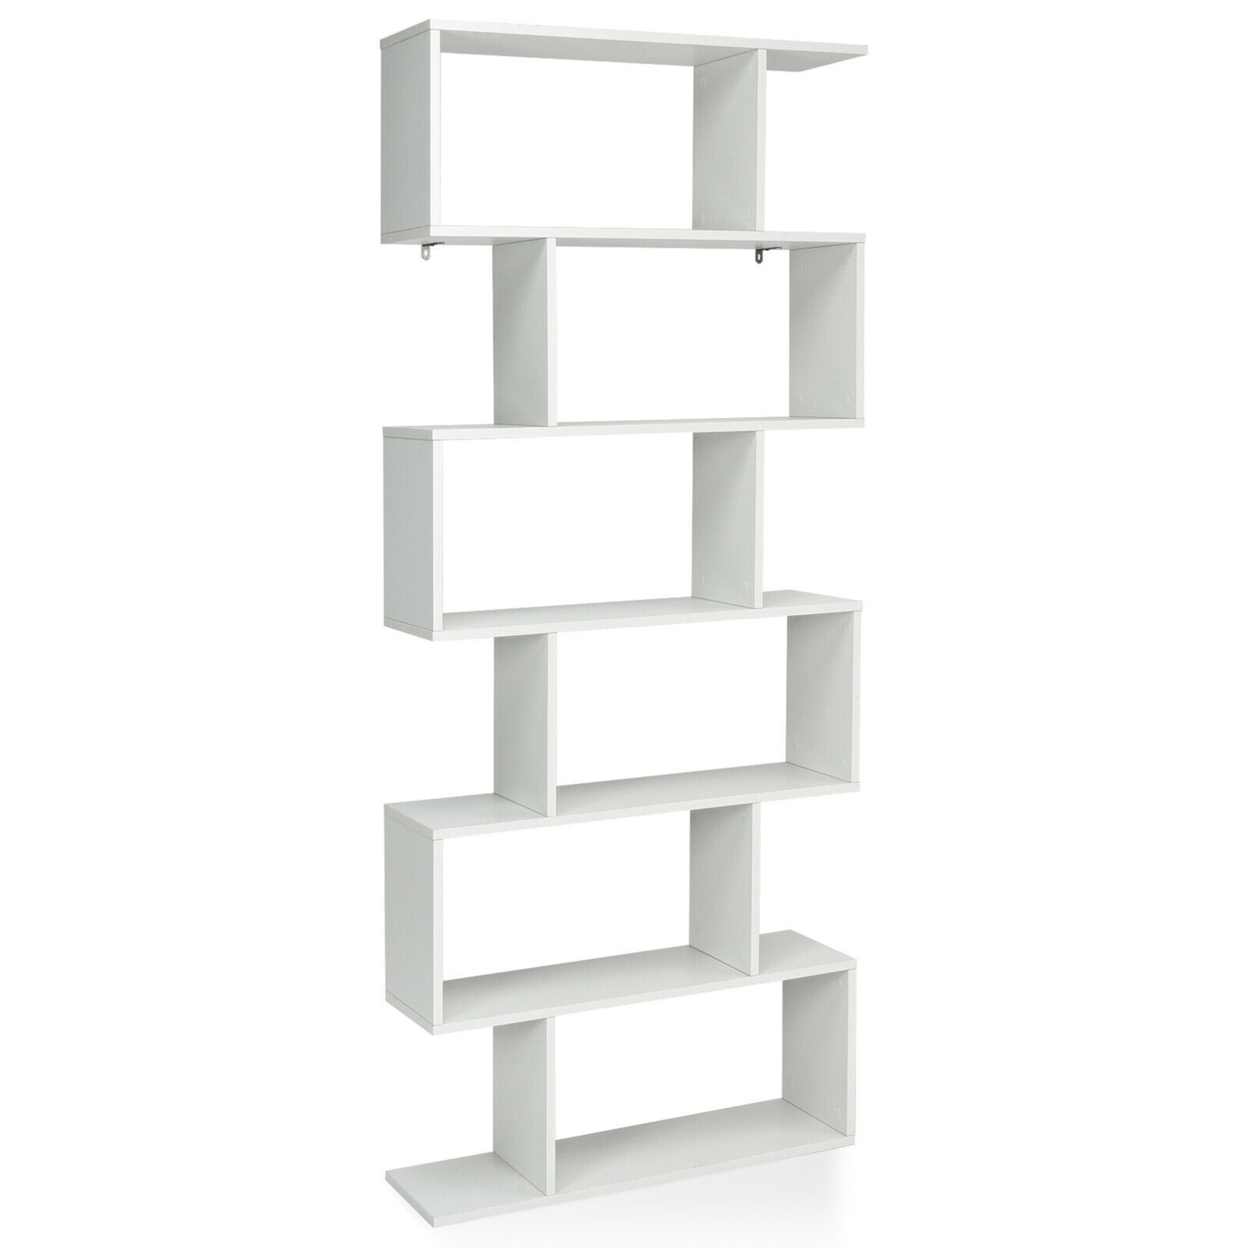 6 Tier S-Shaped Bookshelf Storage Display Bookcase Decor Z-Shelf - White